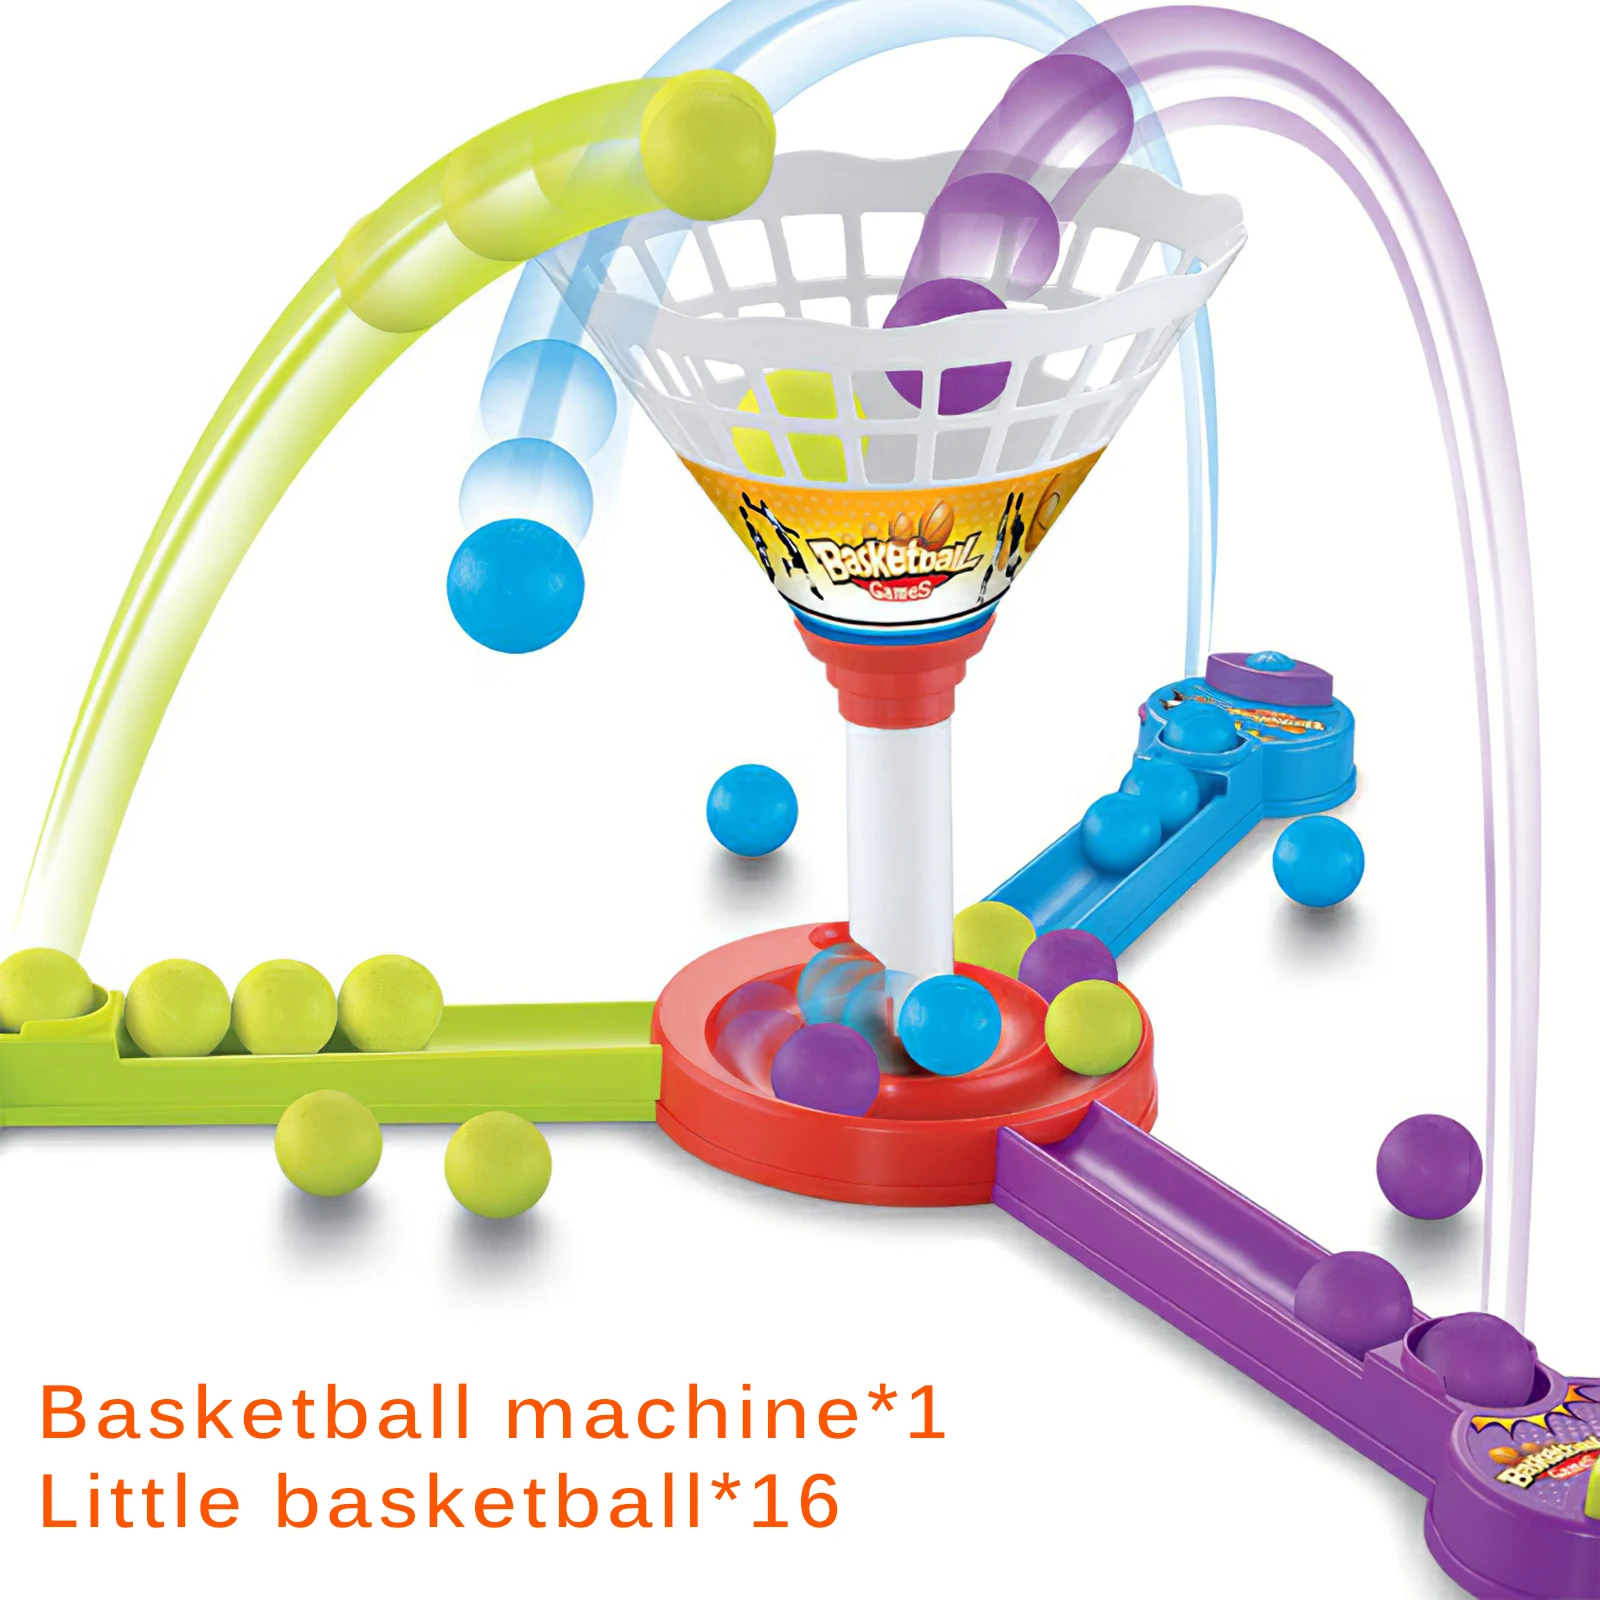 

Детская игра для стрельбы с мячиками, игрушка для стрельбы на 3 человек, развивающая игрушка хорошего качества для взаимодействия родителей...